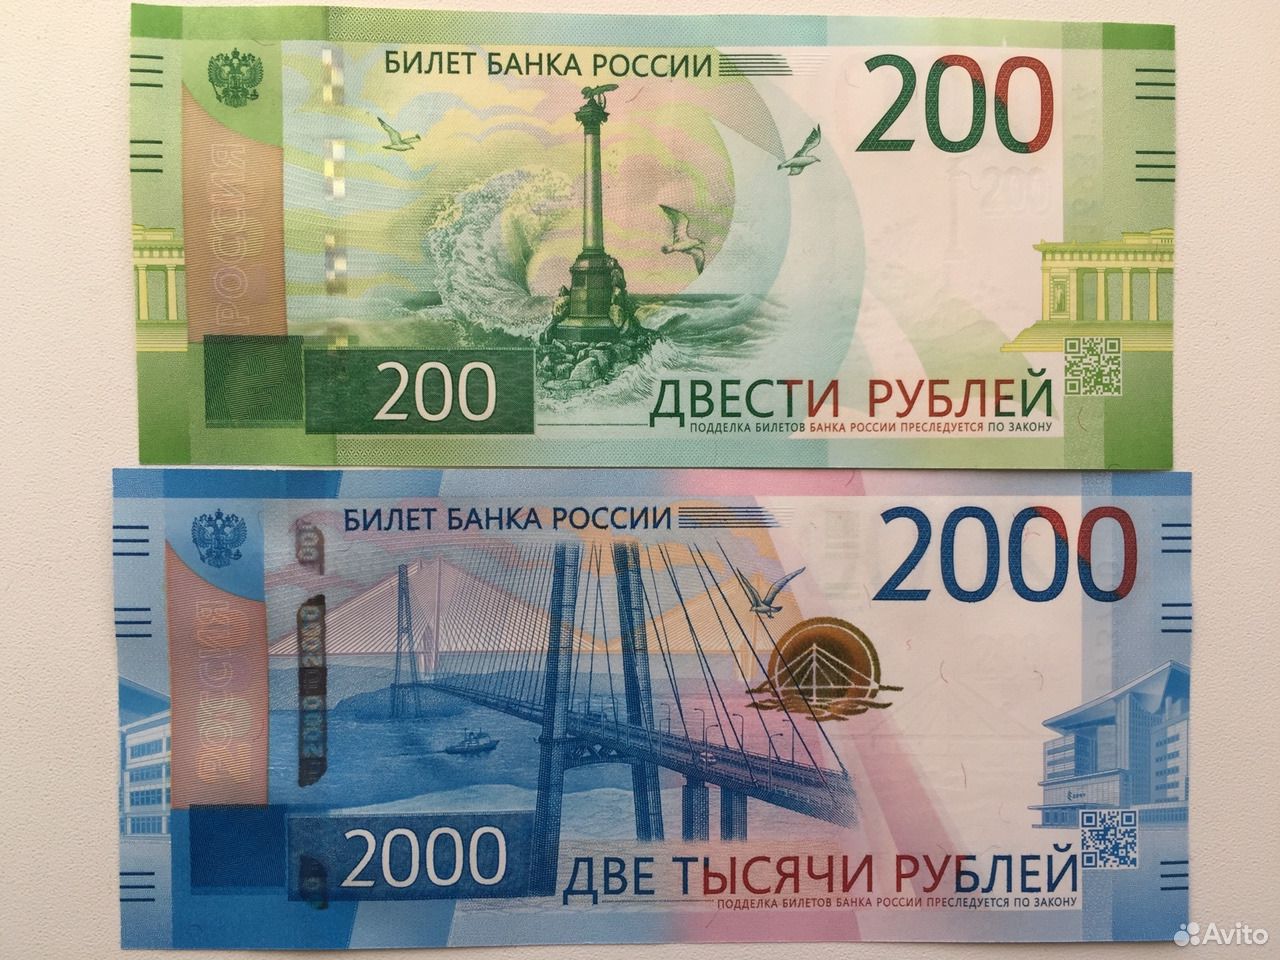 600 рублей россии. 2000 Рублей. 2000 Рублей 2017 года. Купюра 2000 рублей. 200 Рублей банкнота.